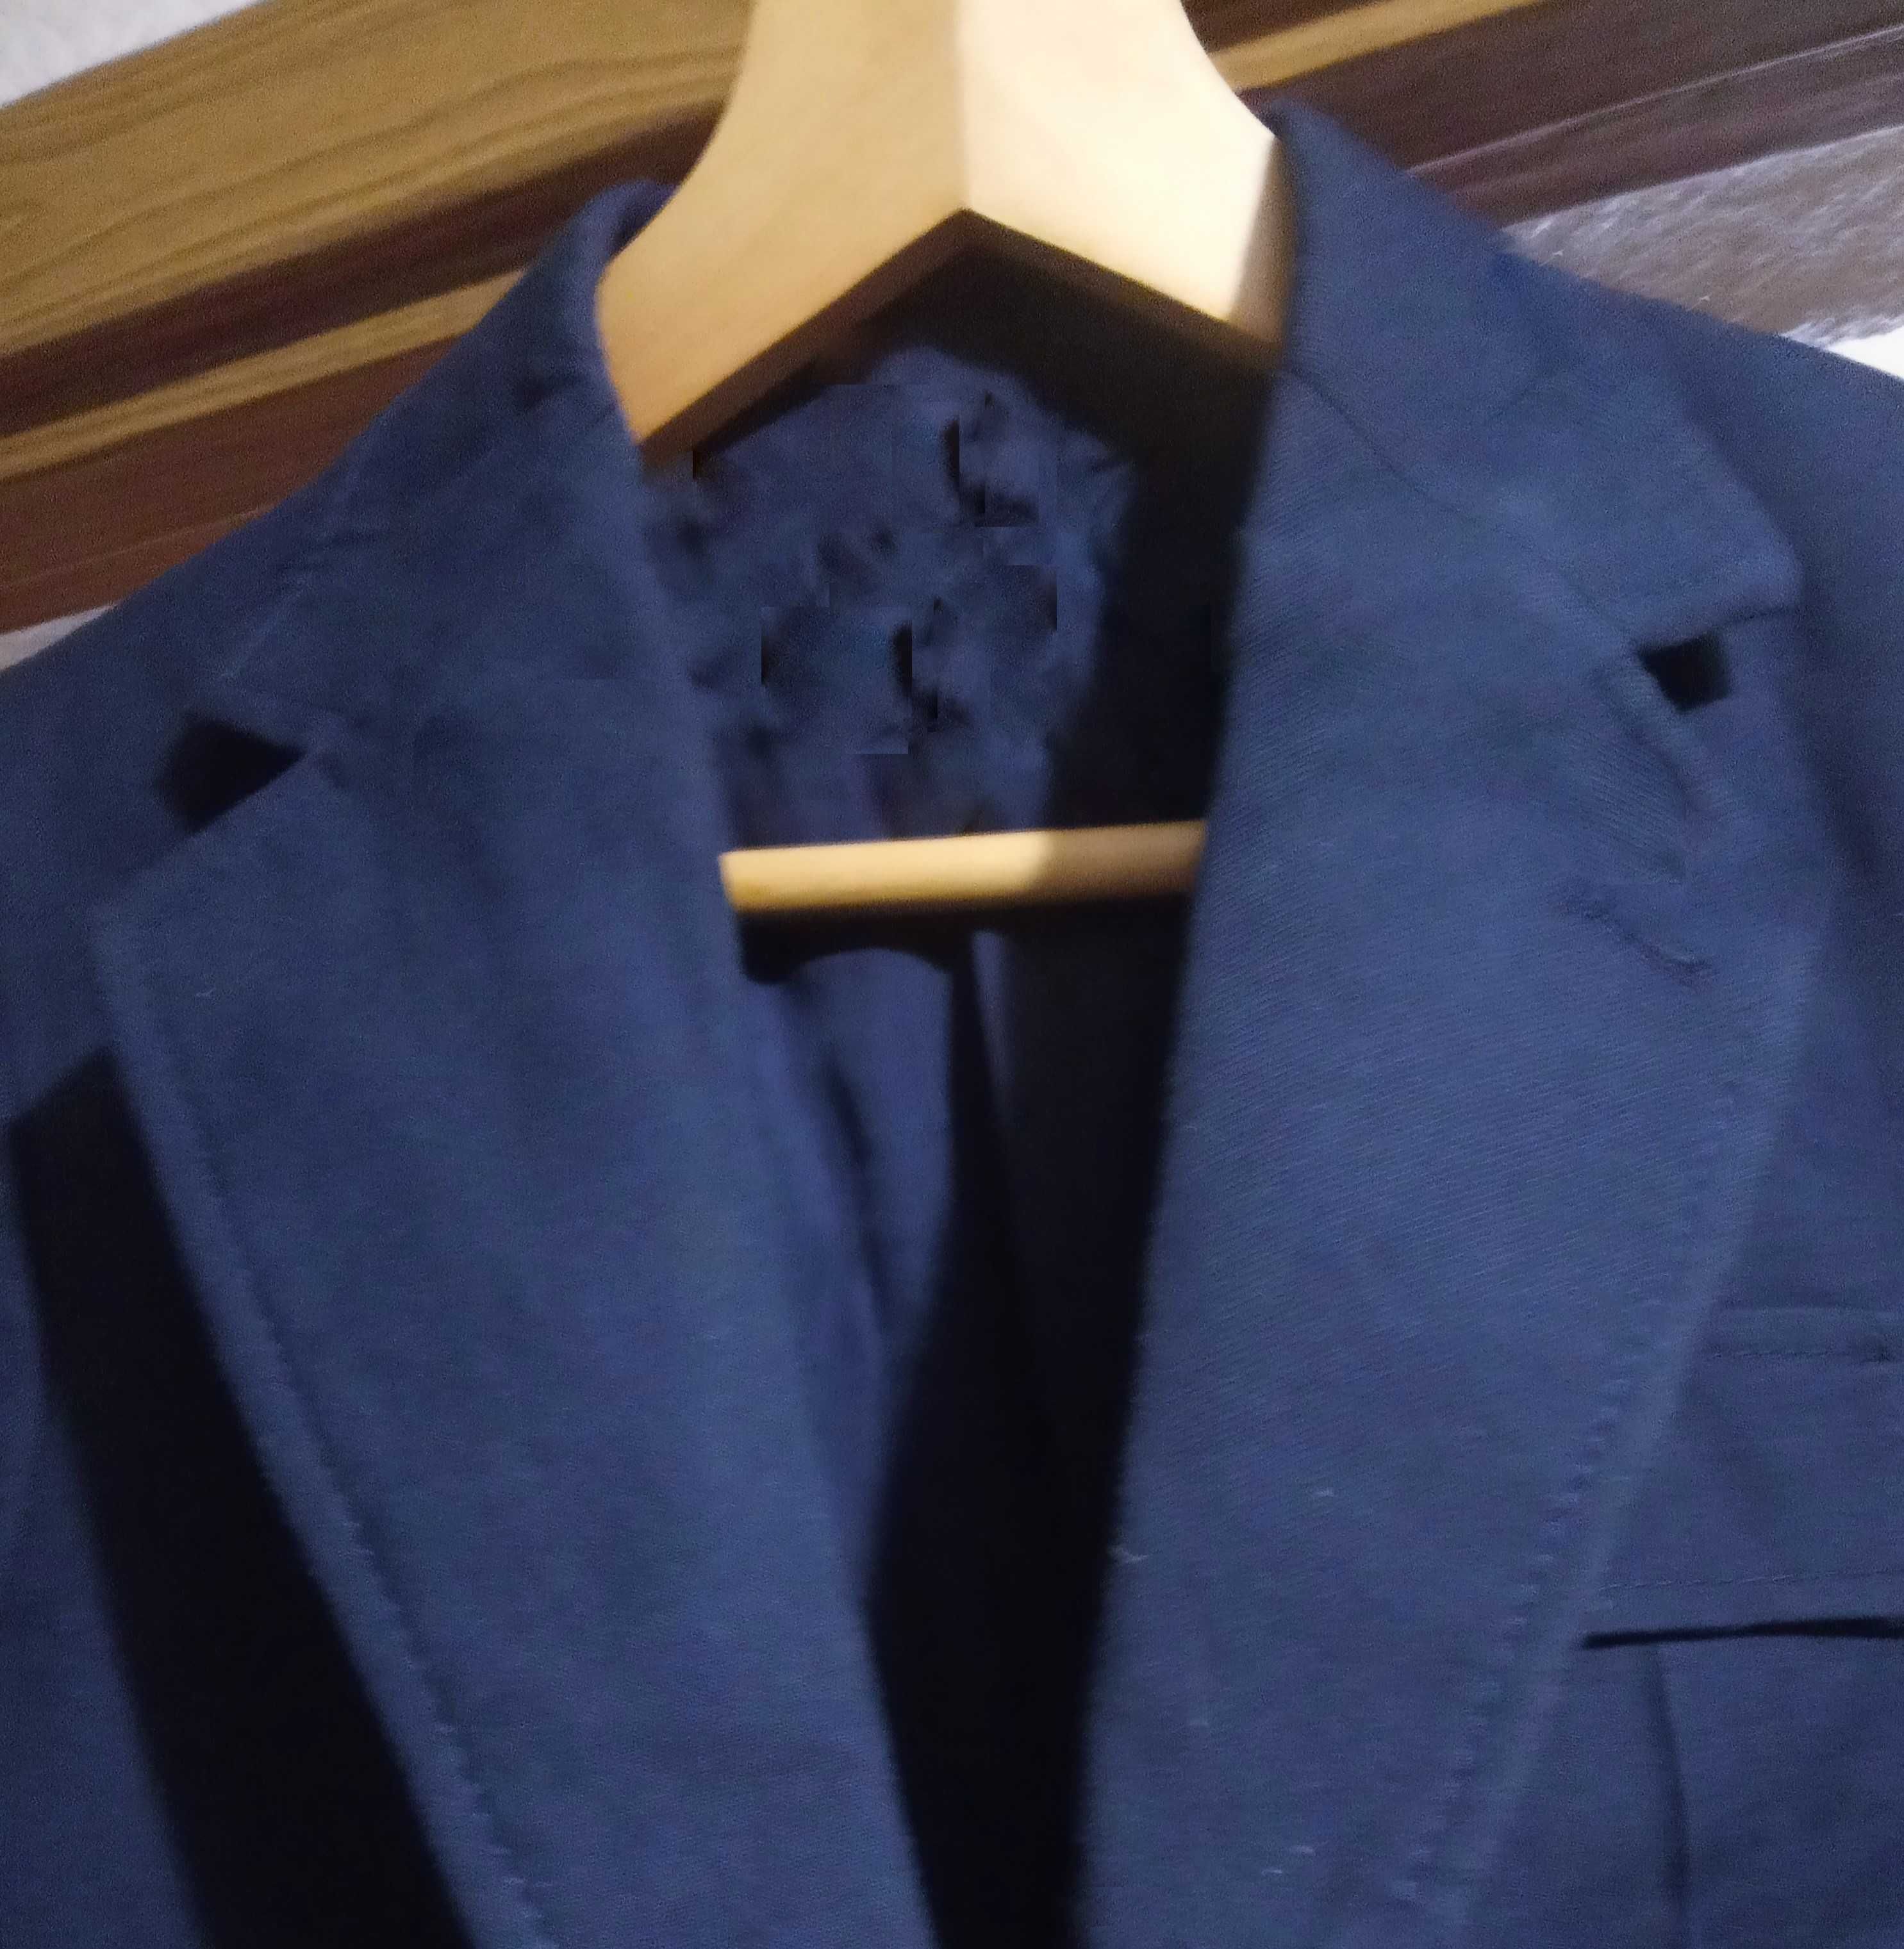 Продам школьный пиджак,  Румыния, синий, размеры в объявл, 150 грн..